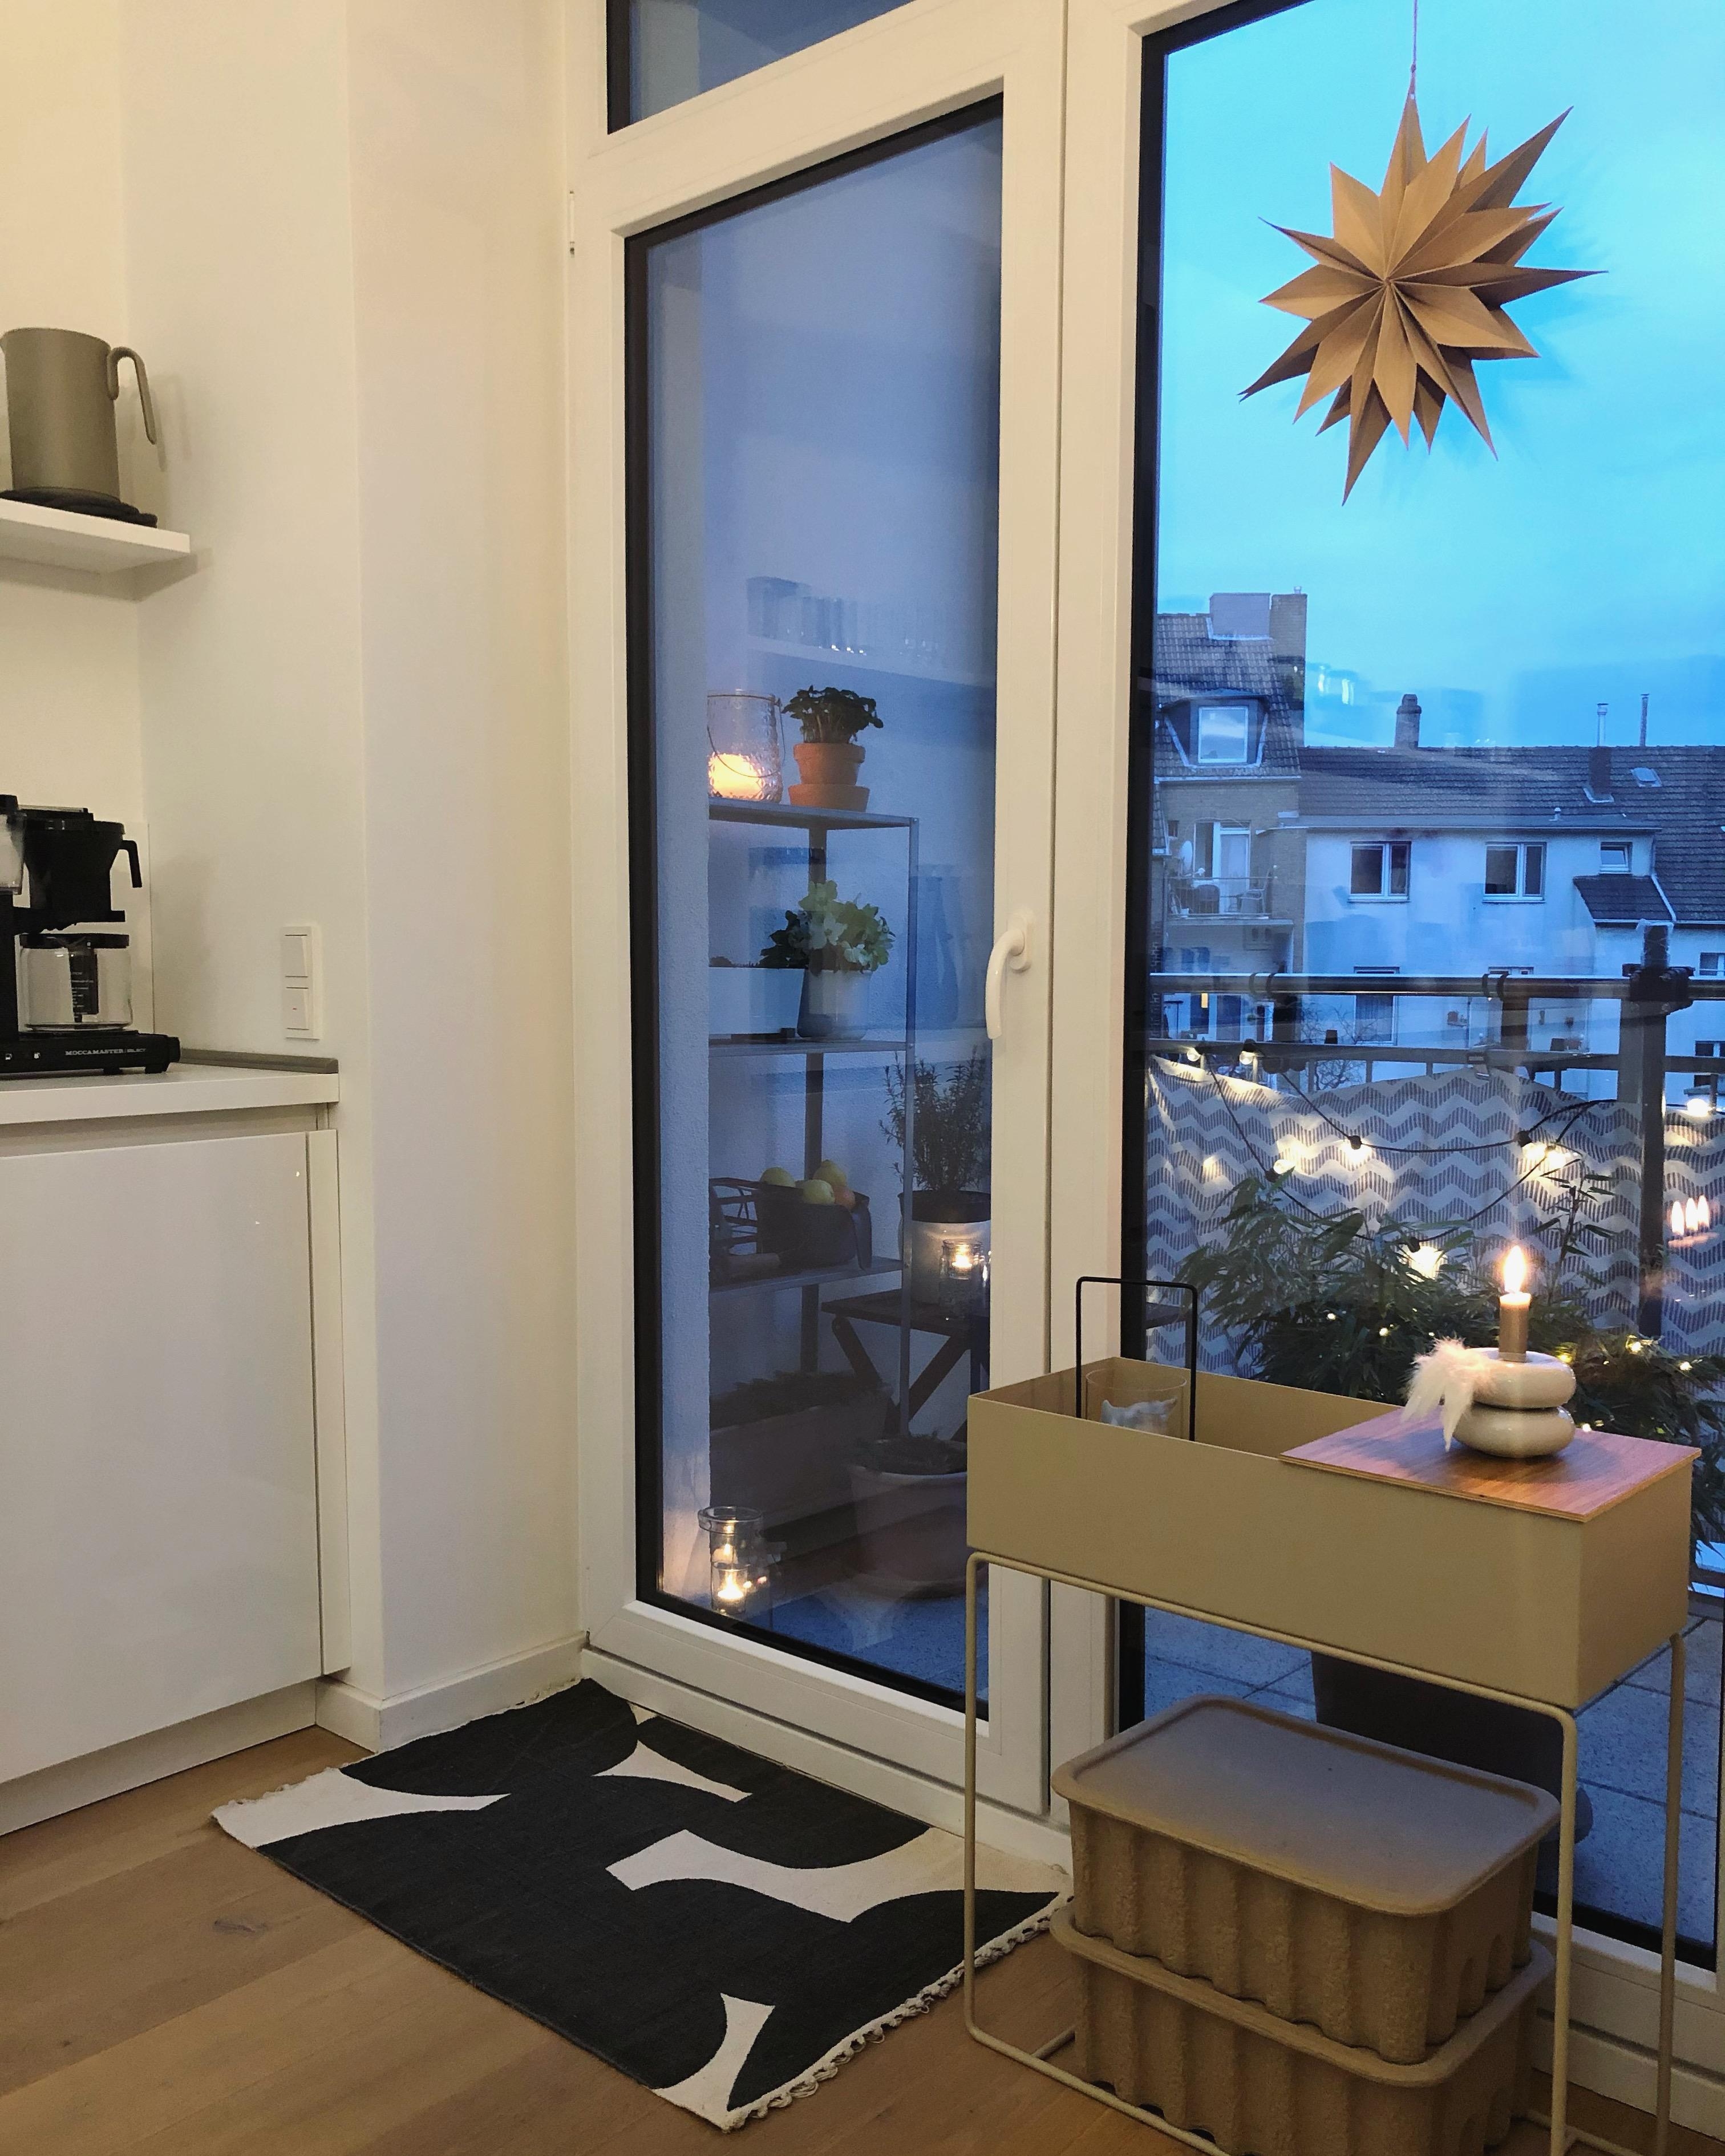 #cozy #candlelight #kitchen #küche #balkon #balkony #interior #deko #dekoideen #couchstyle #weihnachten #plantbox 